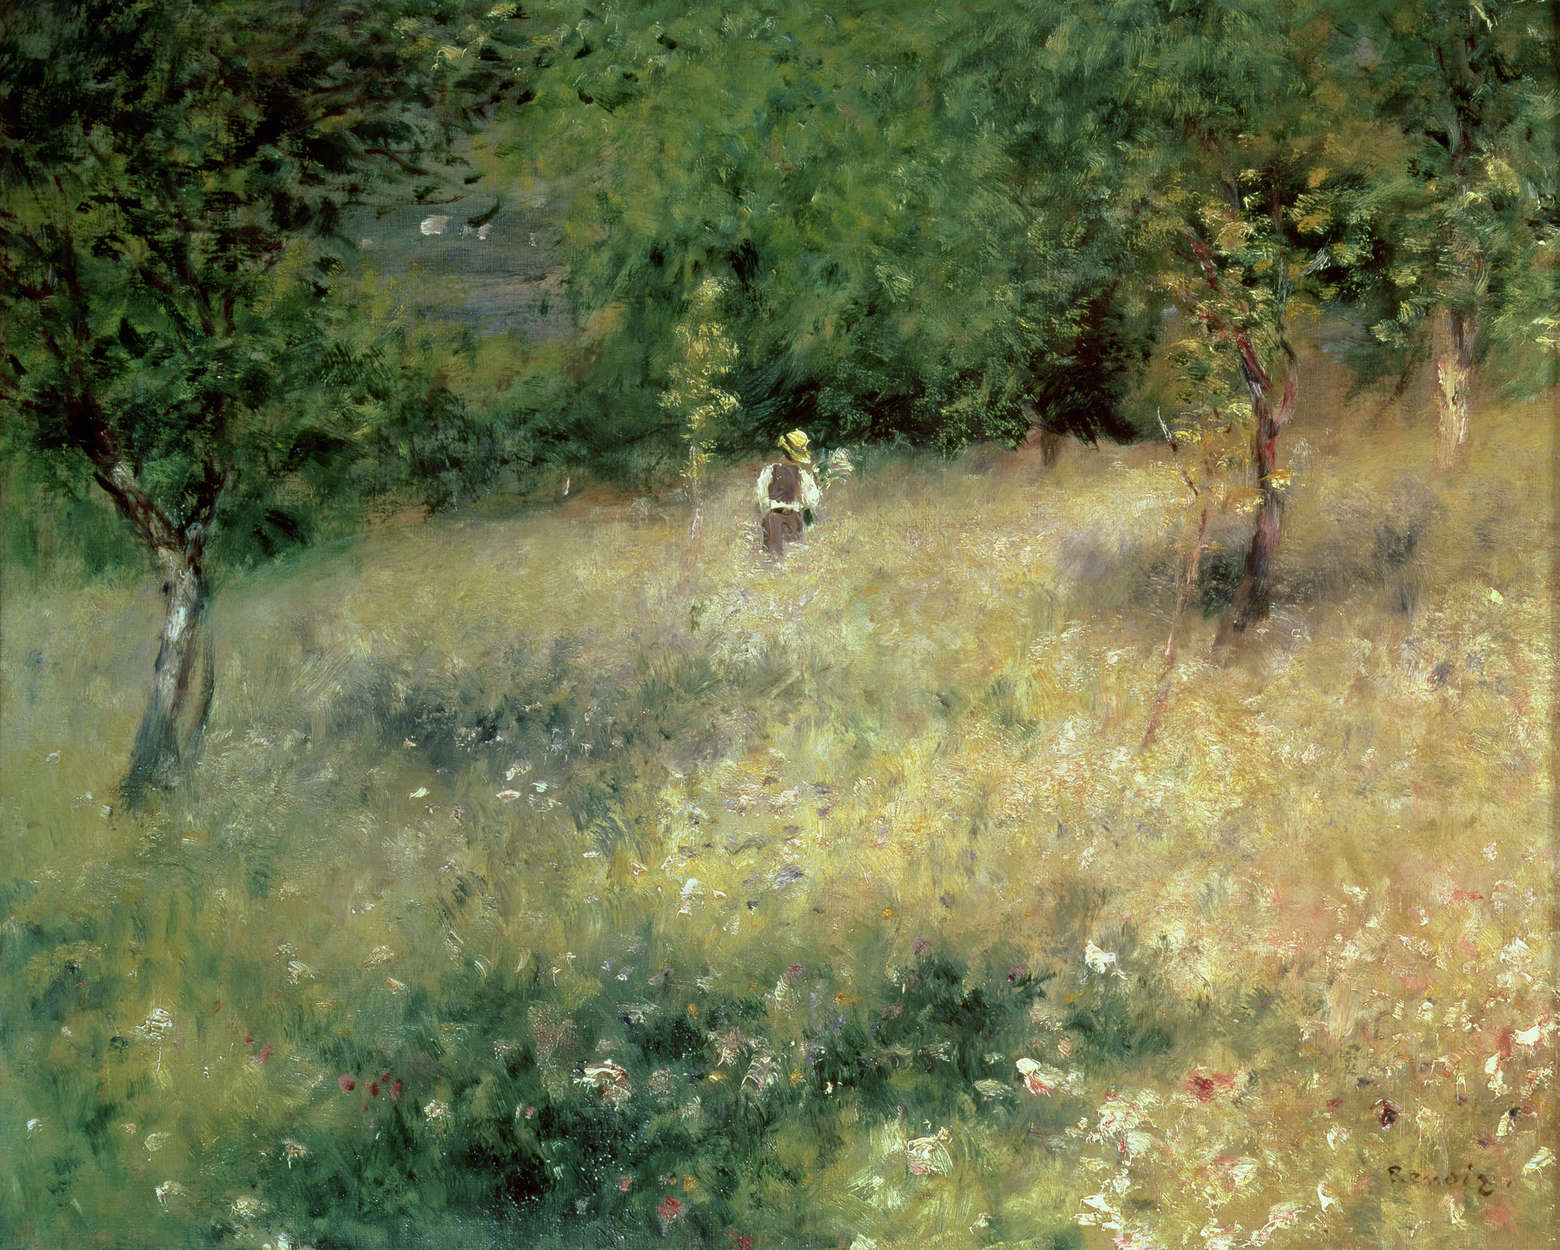             Lente in Chatou" muurschildering van Pierre Auguste Renoir
        